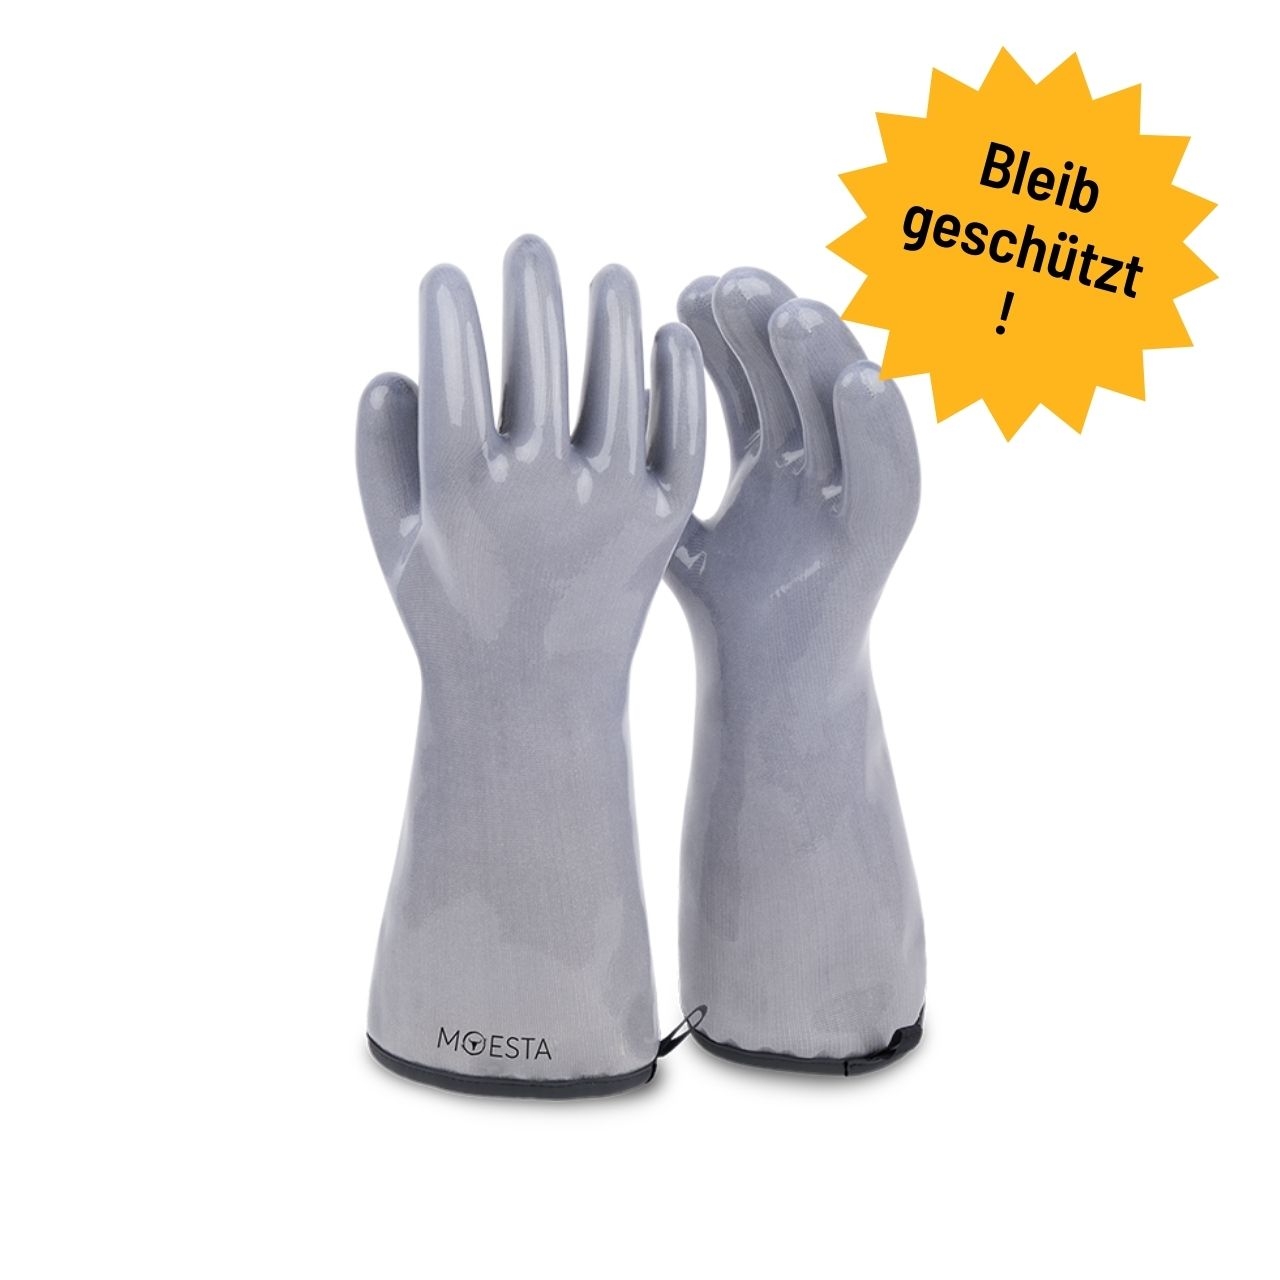 Moesta BBQ HeatPro Gloves - Grillhandschuhe aus Silikon - grau, Größe L